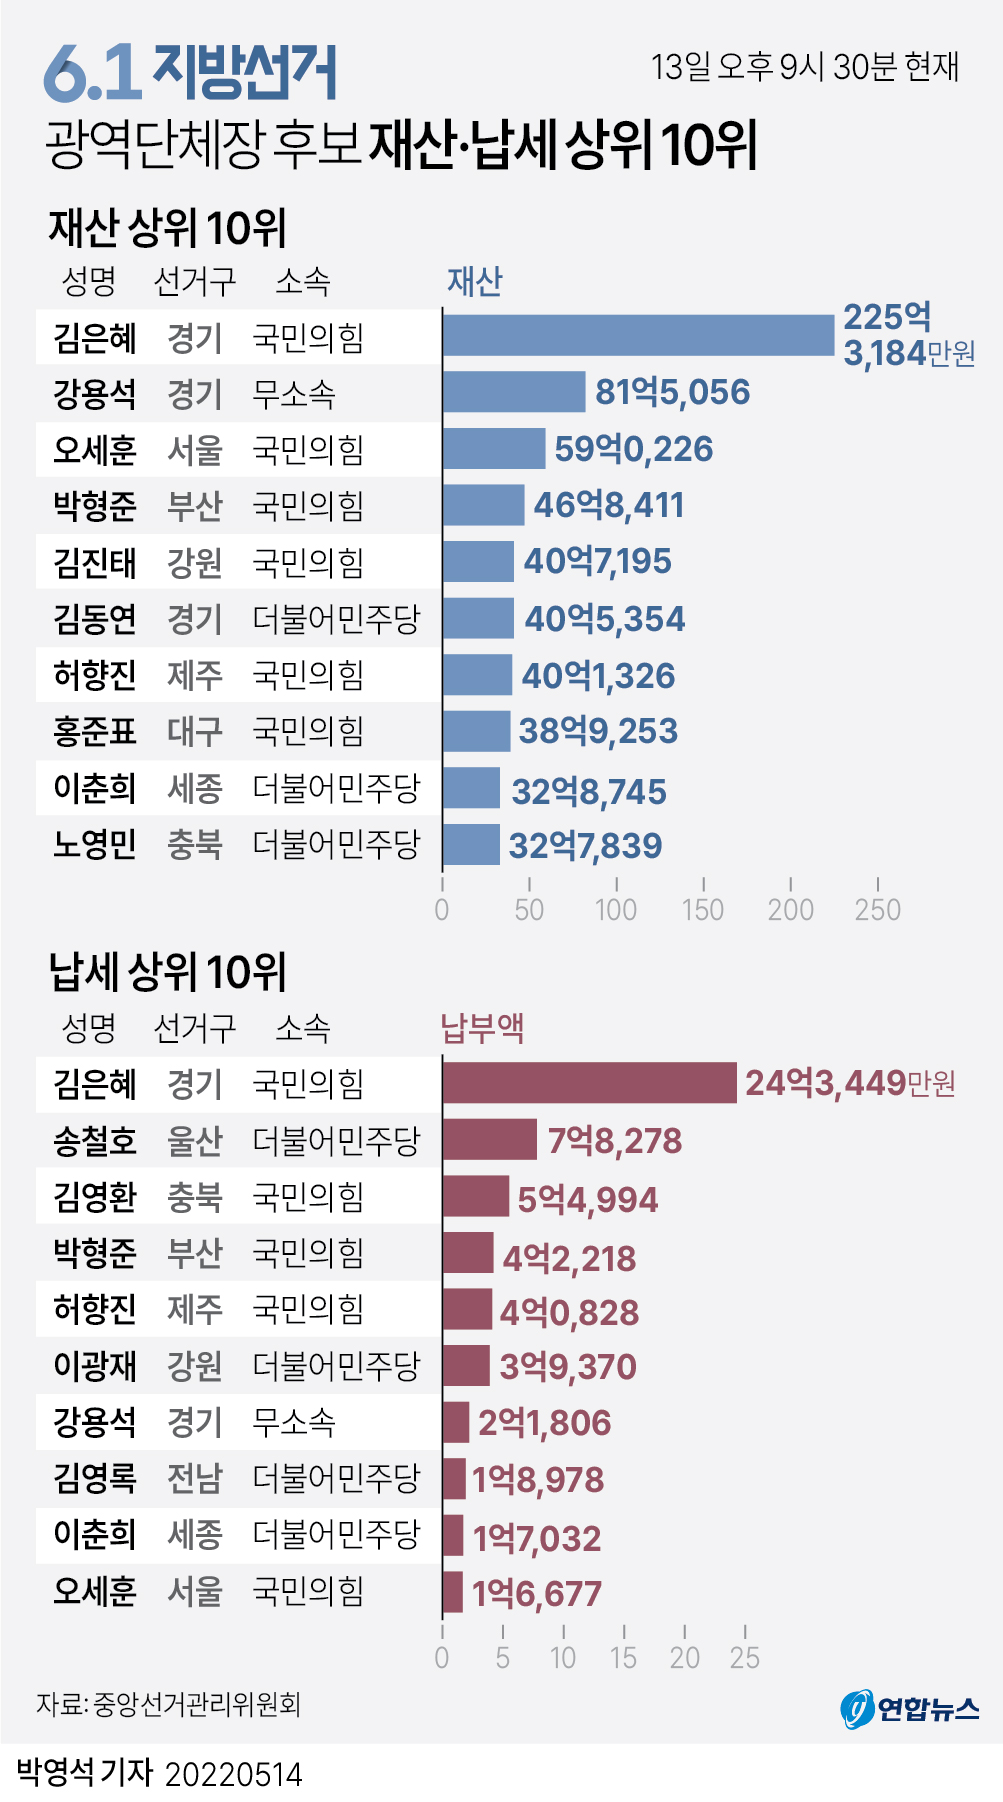 [그래픽] 6.1 지방선거 광역단체장 후보 재산·납세 상위 10위